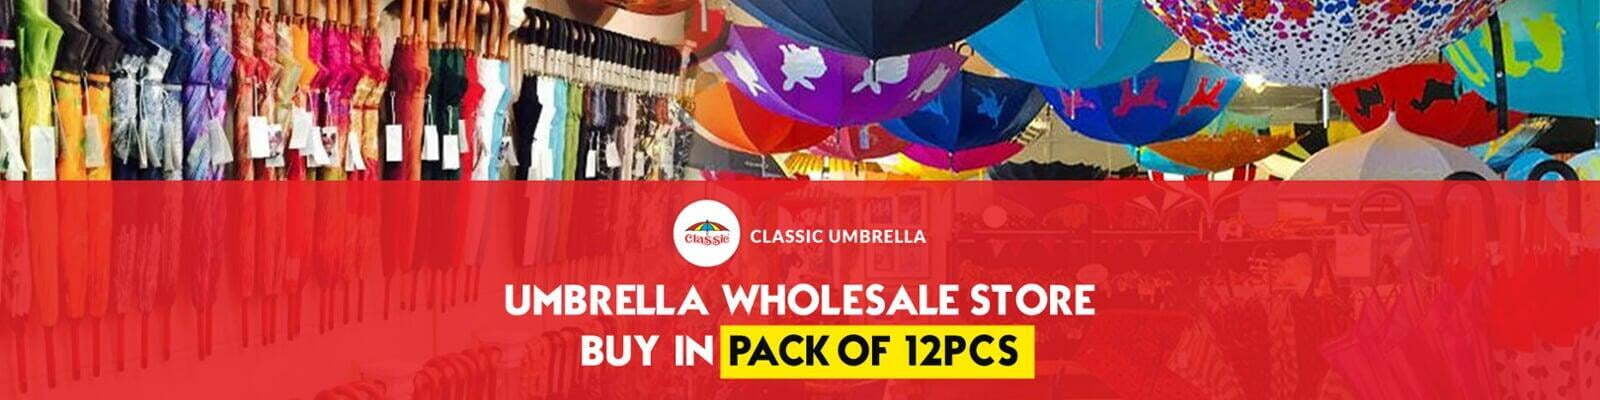 Classic umbrella online store